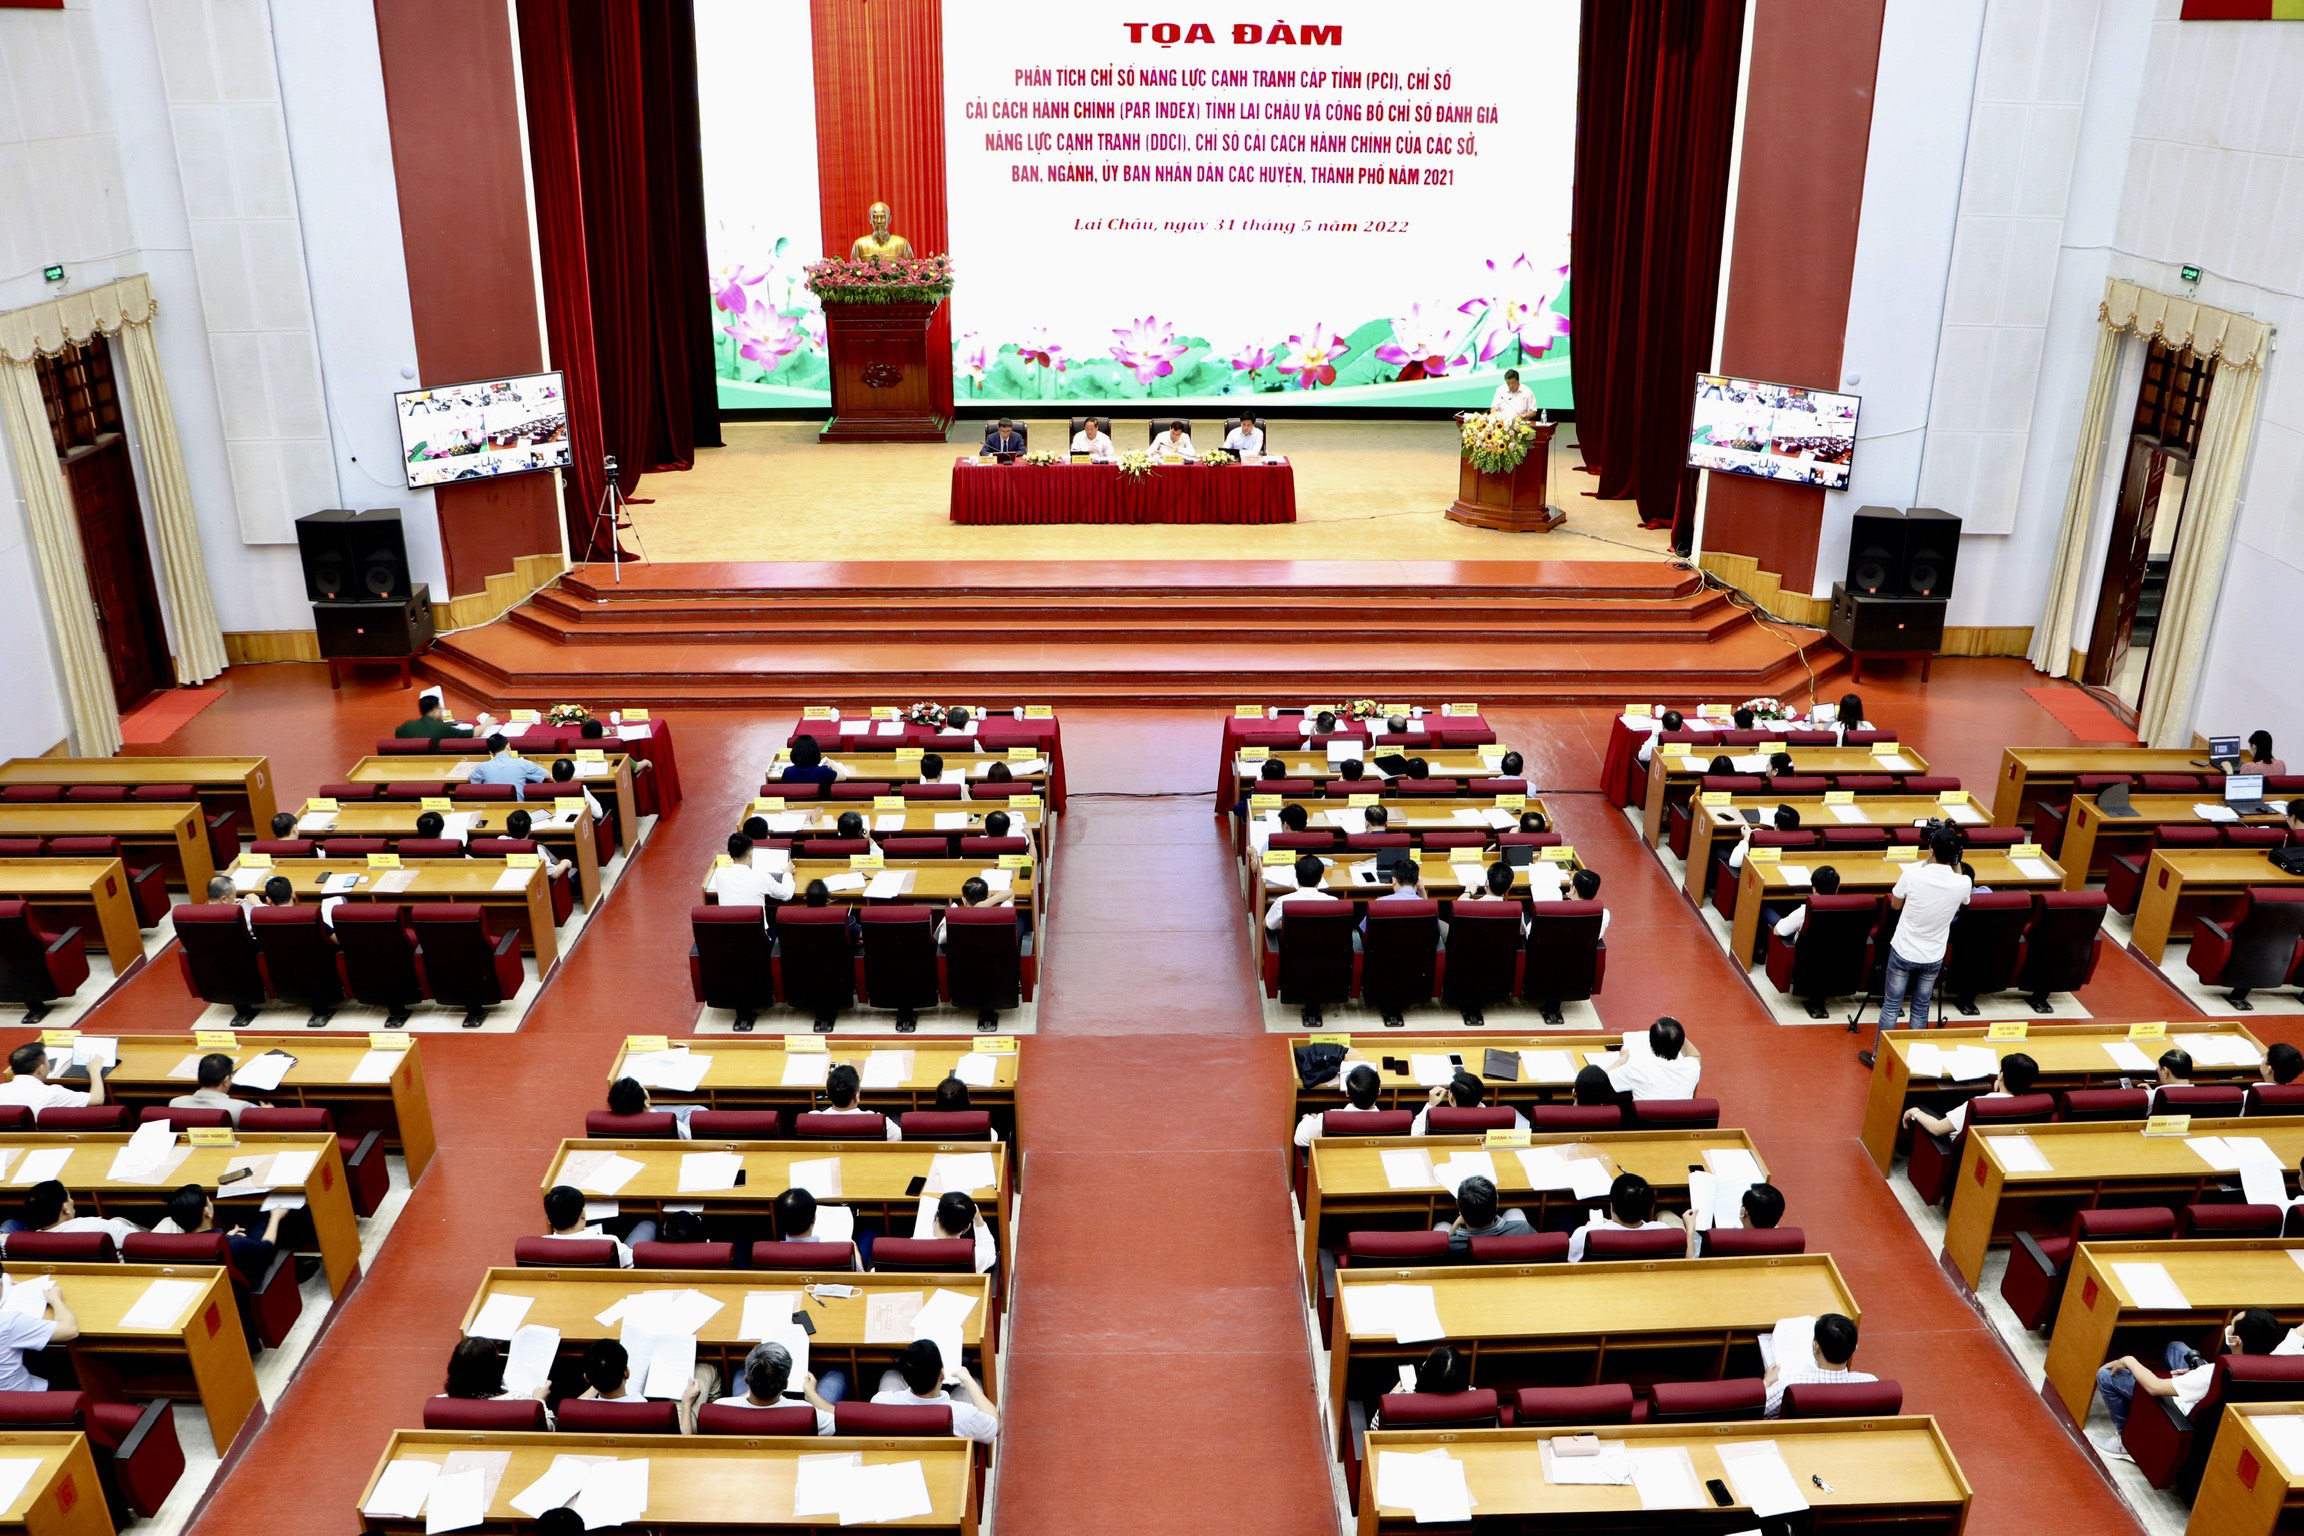 Sở Tư pháp Lai Châu dẫn đầu về Chỉ số cải cách hành chính sở, ngành cấp tỉnh